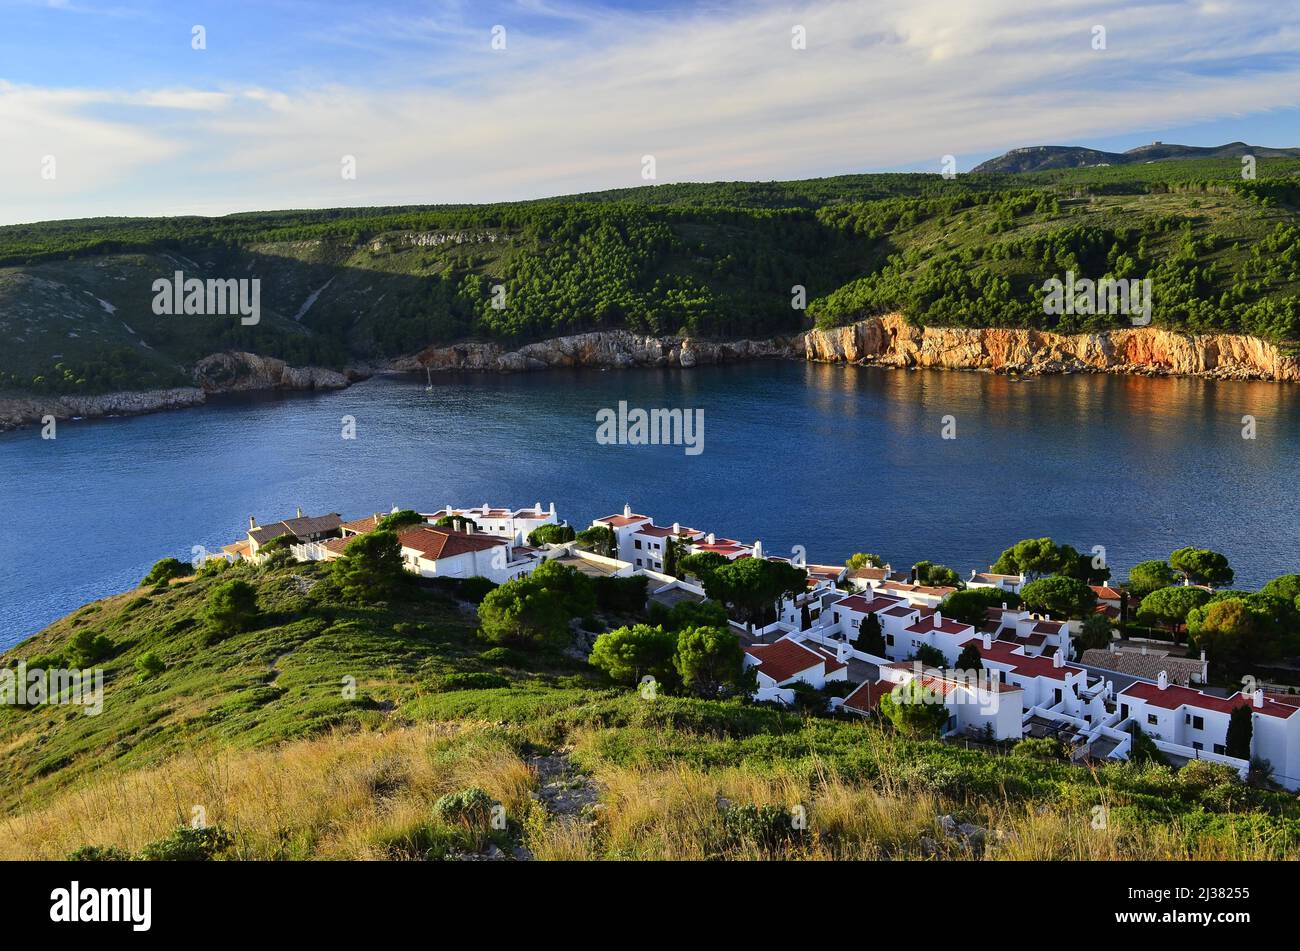 Propriétés résidentielles à flanc de colline de l'Escala sur la côte méditerranéenne, province de Gérone Catalogne Espagne. Banque D'Images